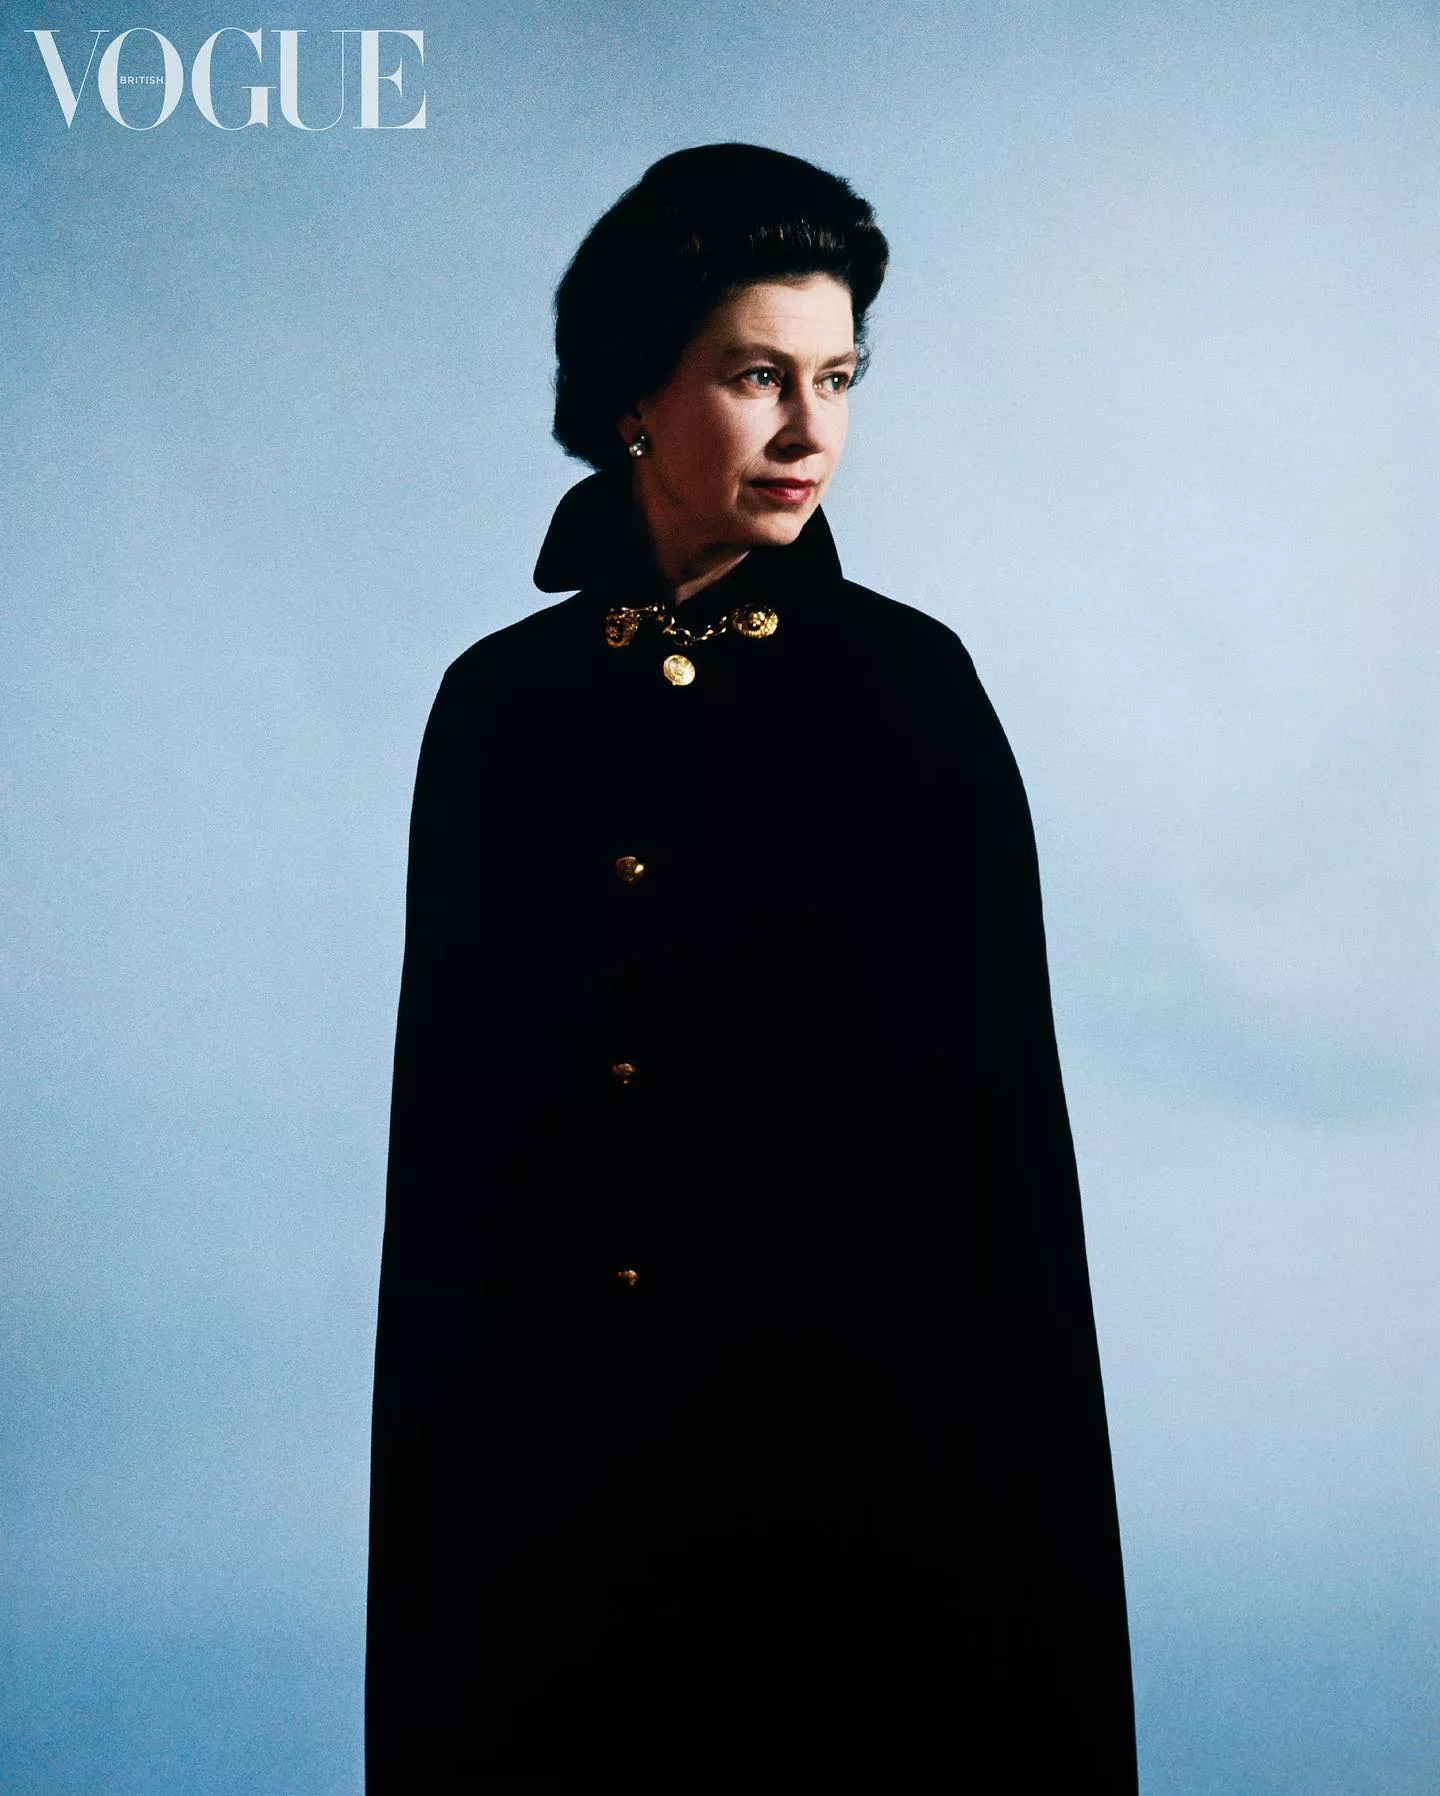 Фото королевы Елизаветы II для Vogue